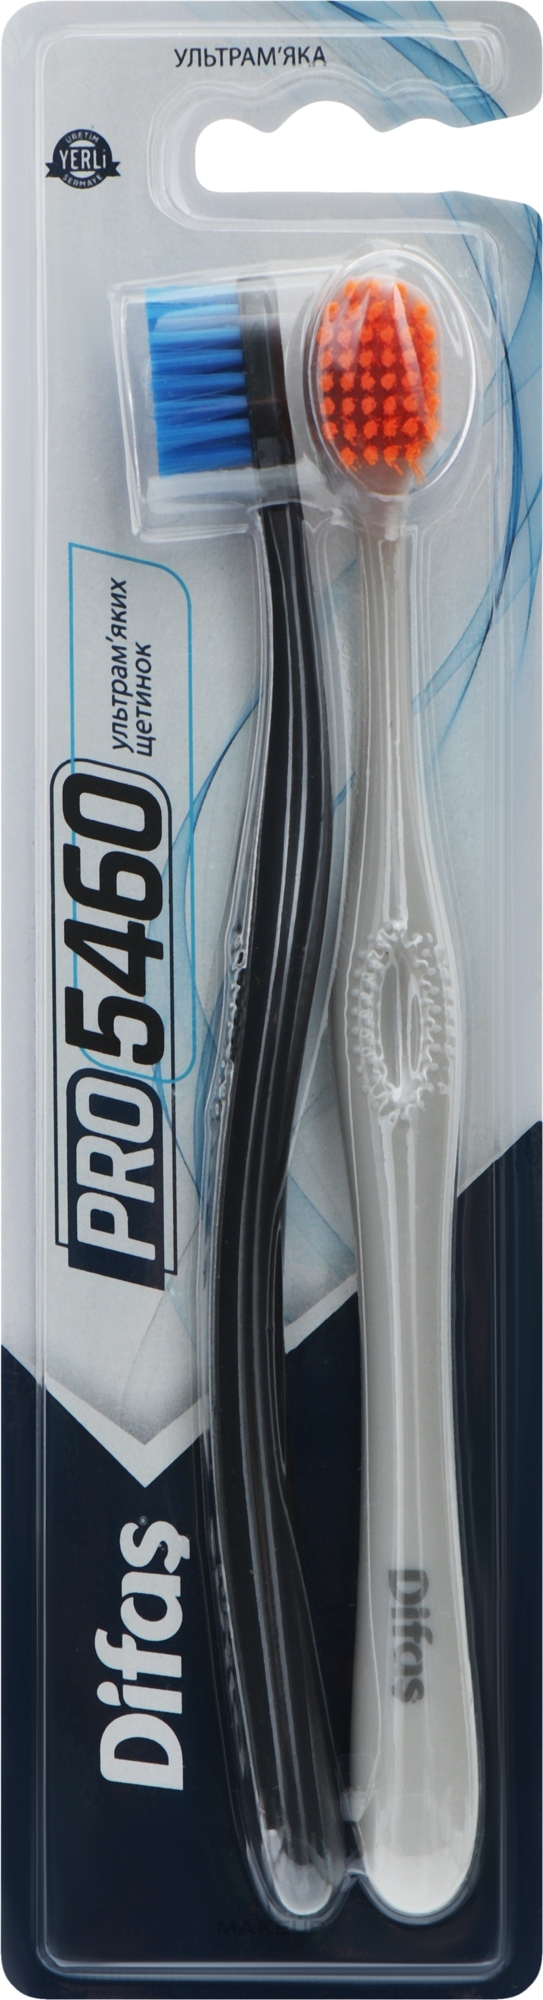 Набор зубных щеток "Ultra Soft", серая + черная - Difas PRO 5460 — фото 2шт